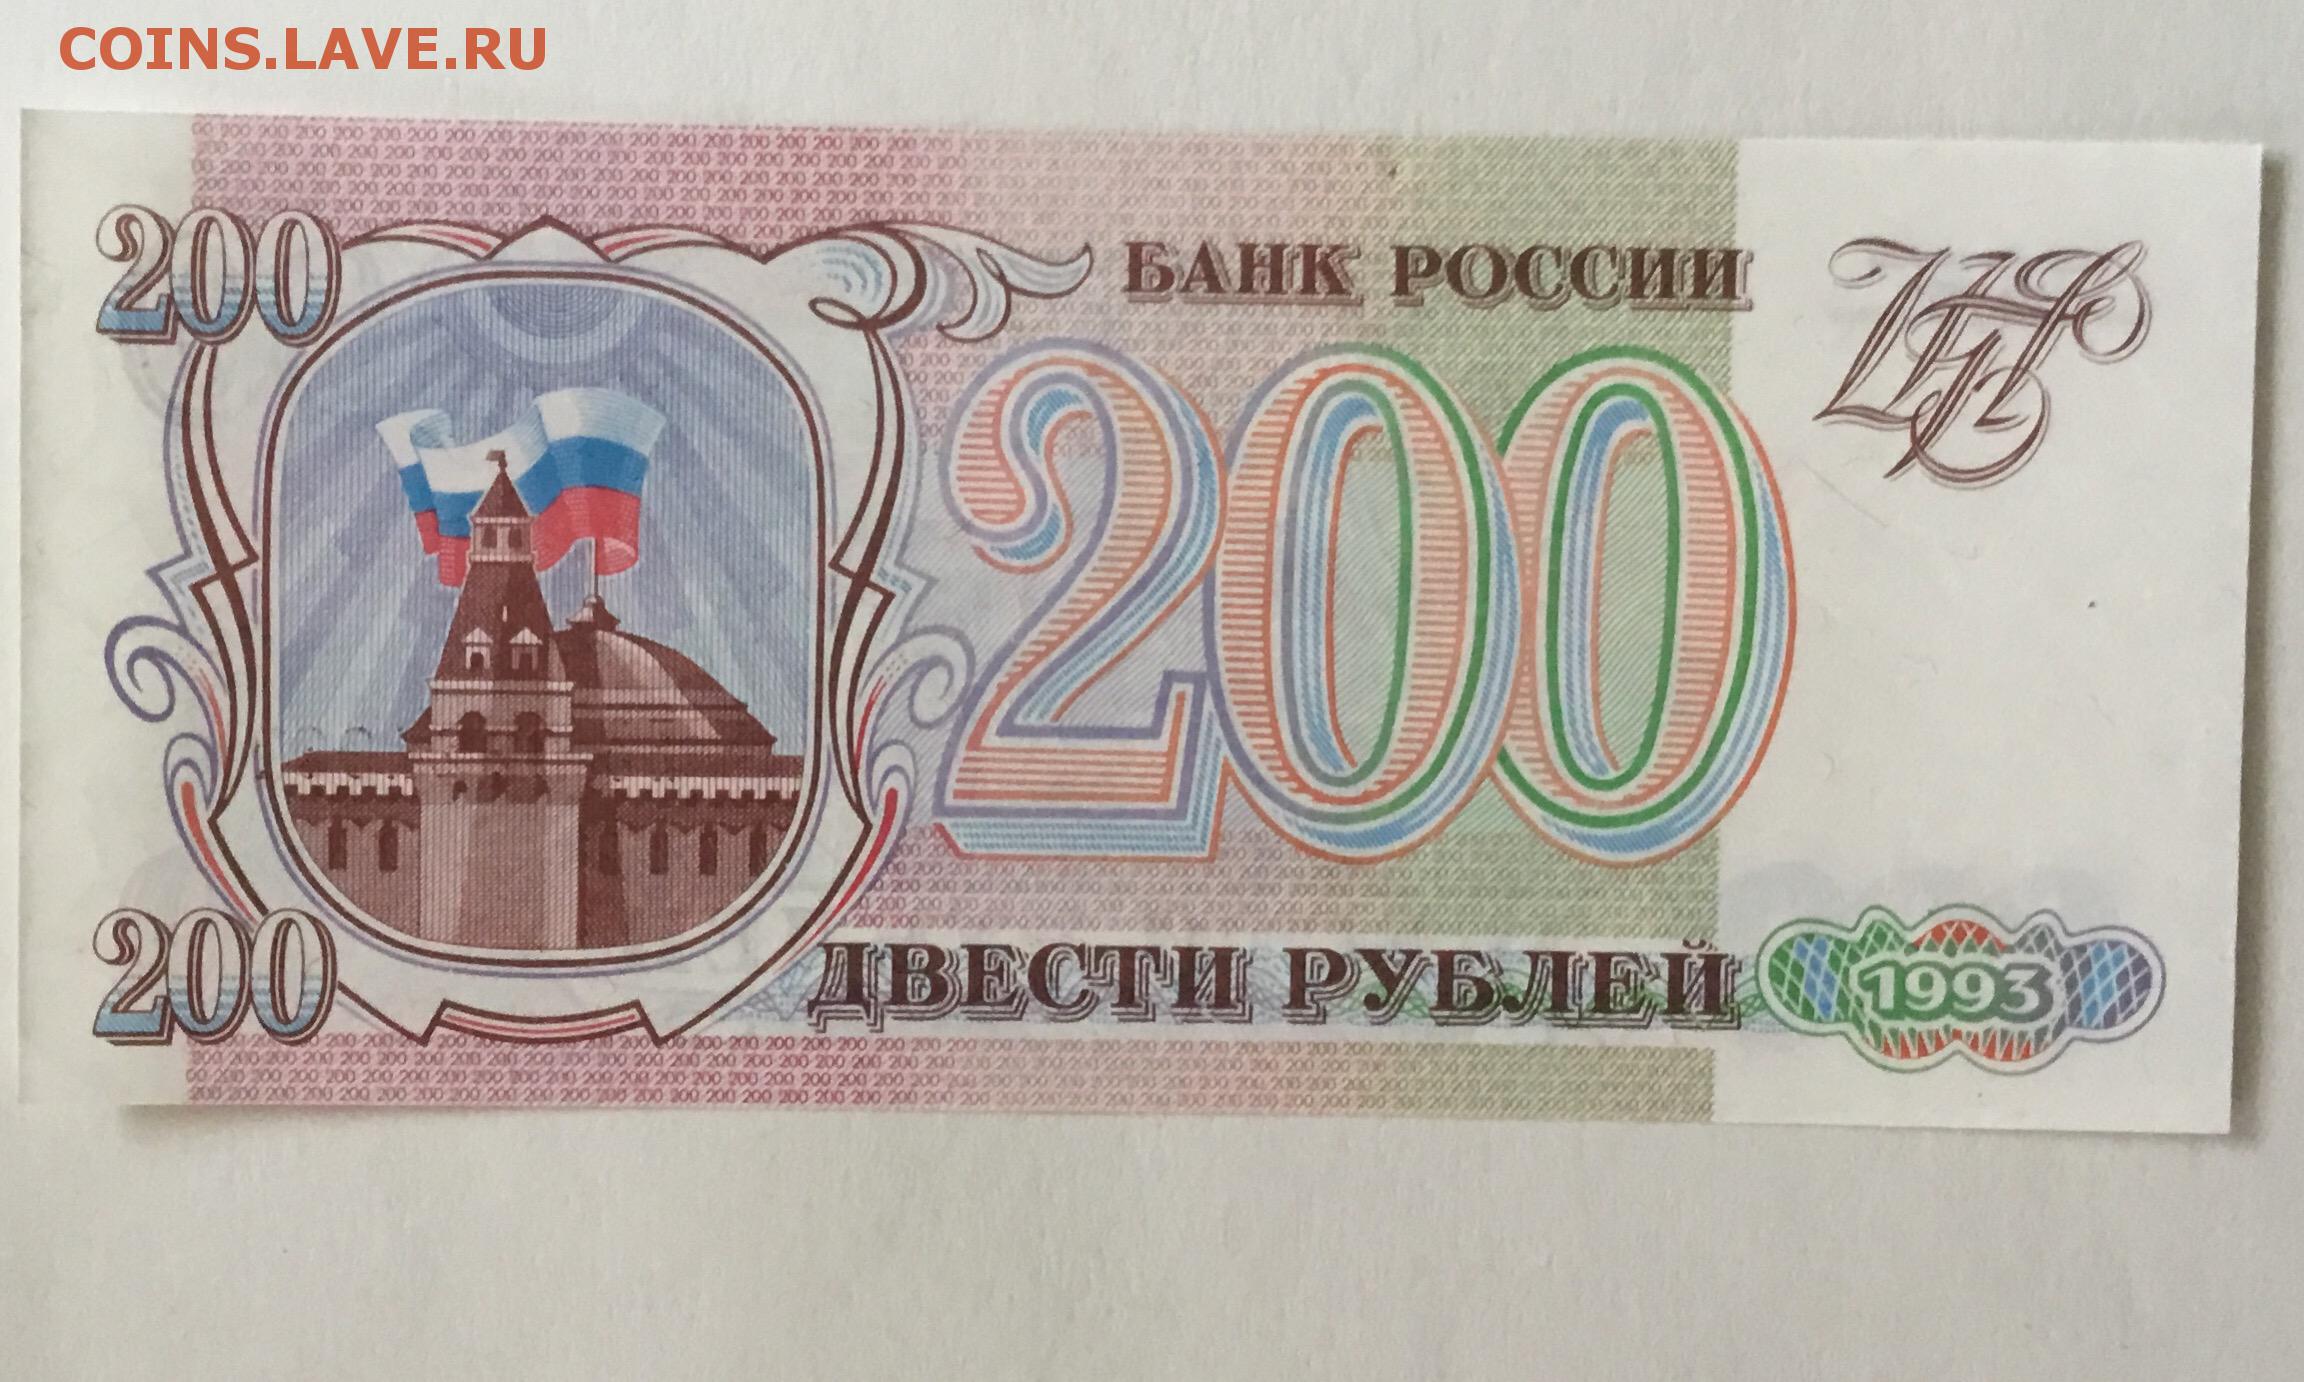 14 200 в рублях